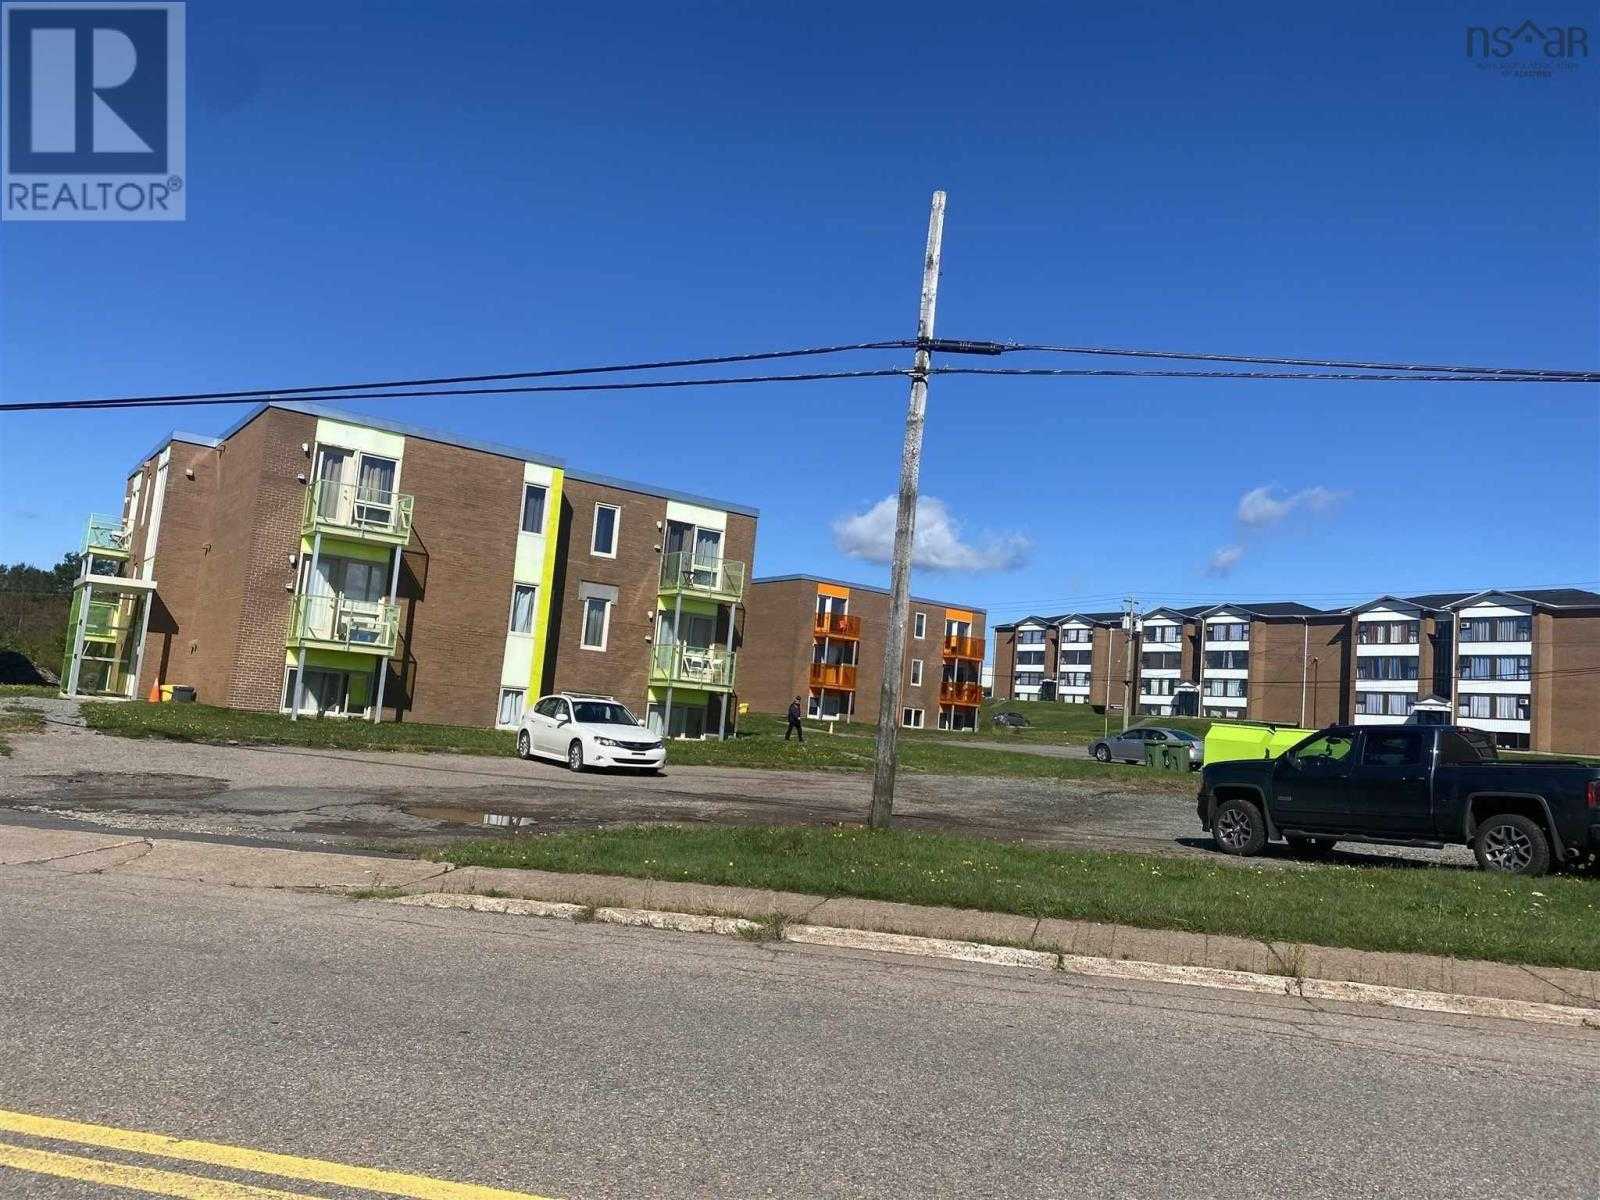 Meerdere huizen in Port Hastings, Nova Scotia 11181600